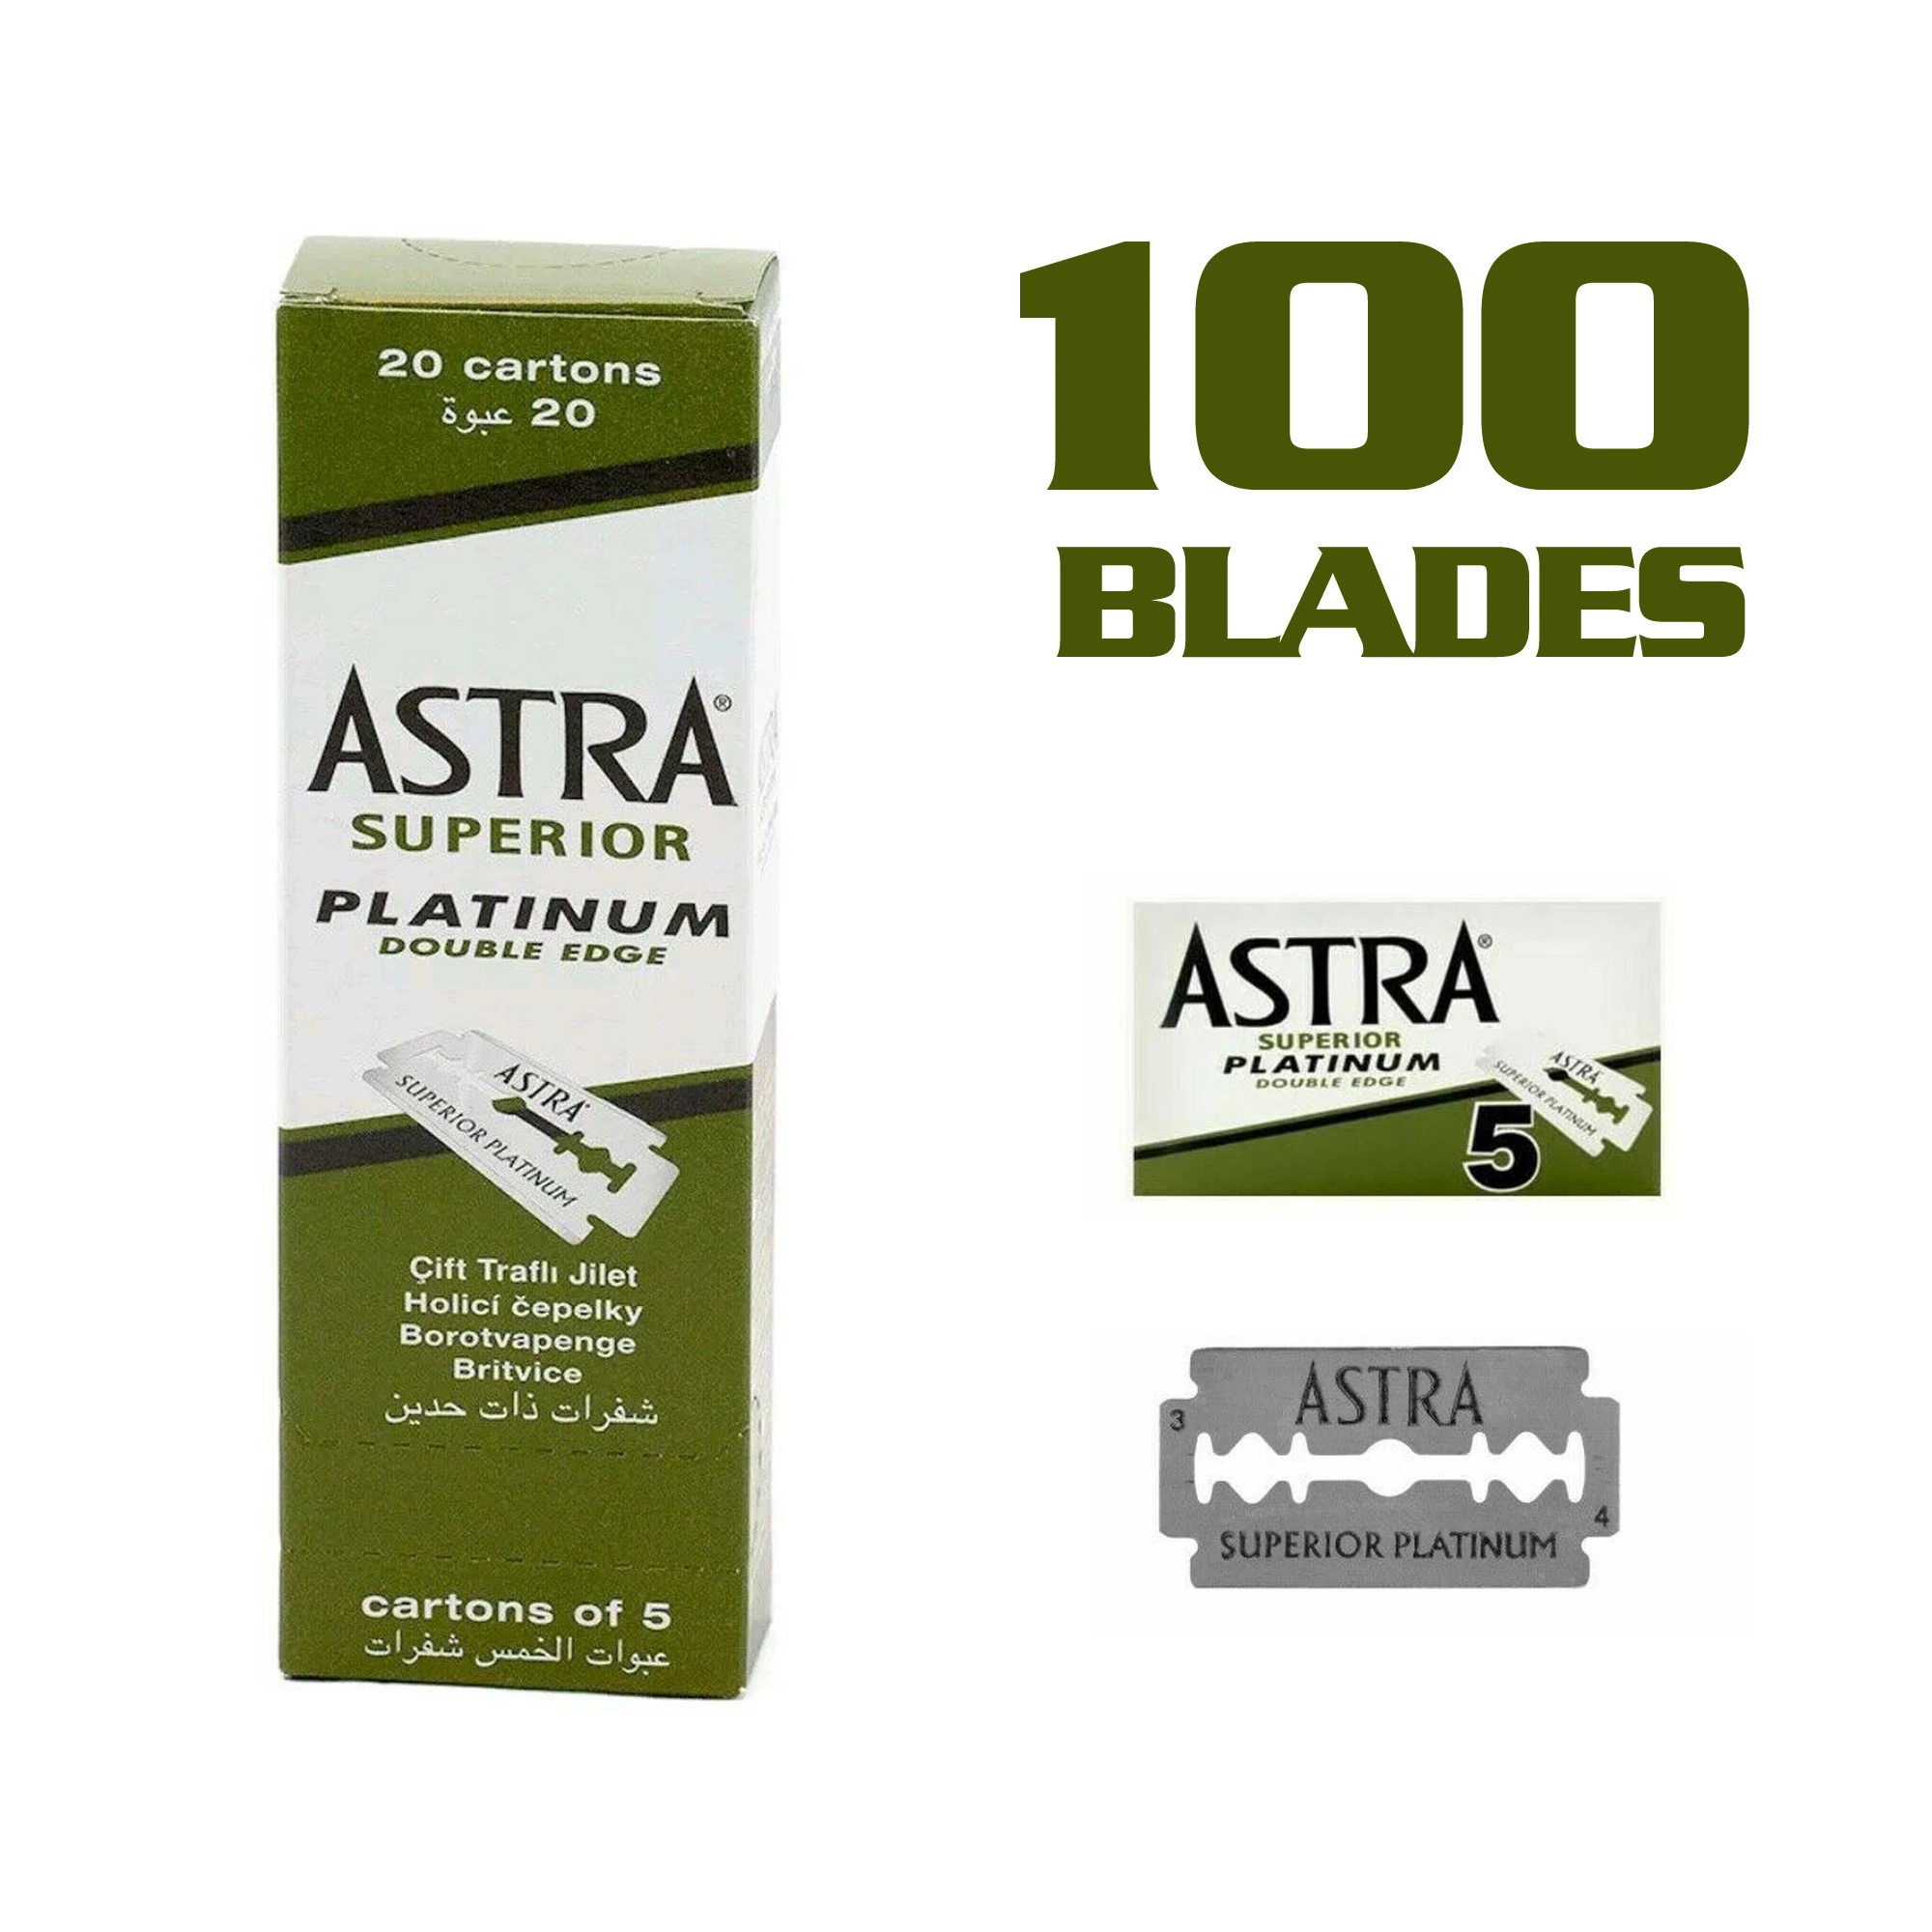 100 pcs Original Astra Superior Platinum Double Edge Shaving Razor Blades